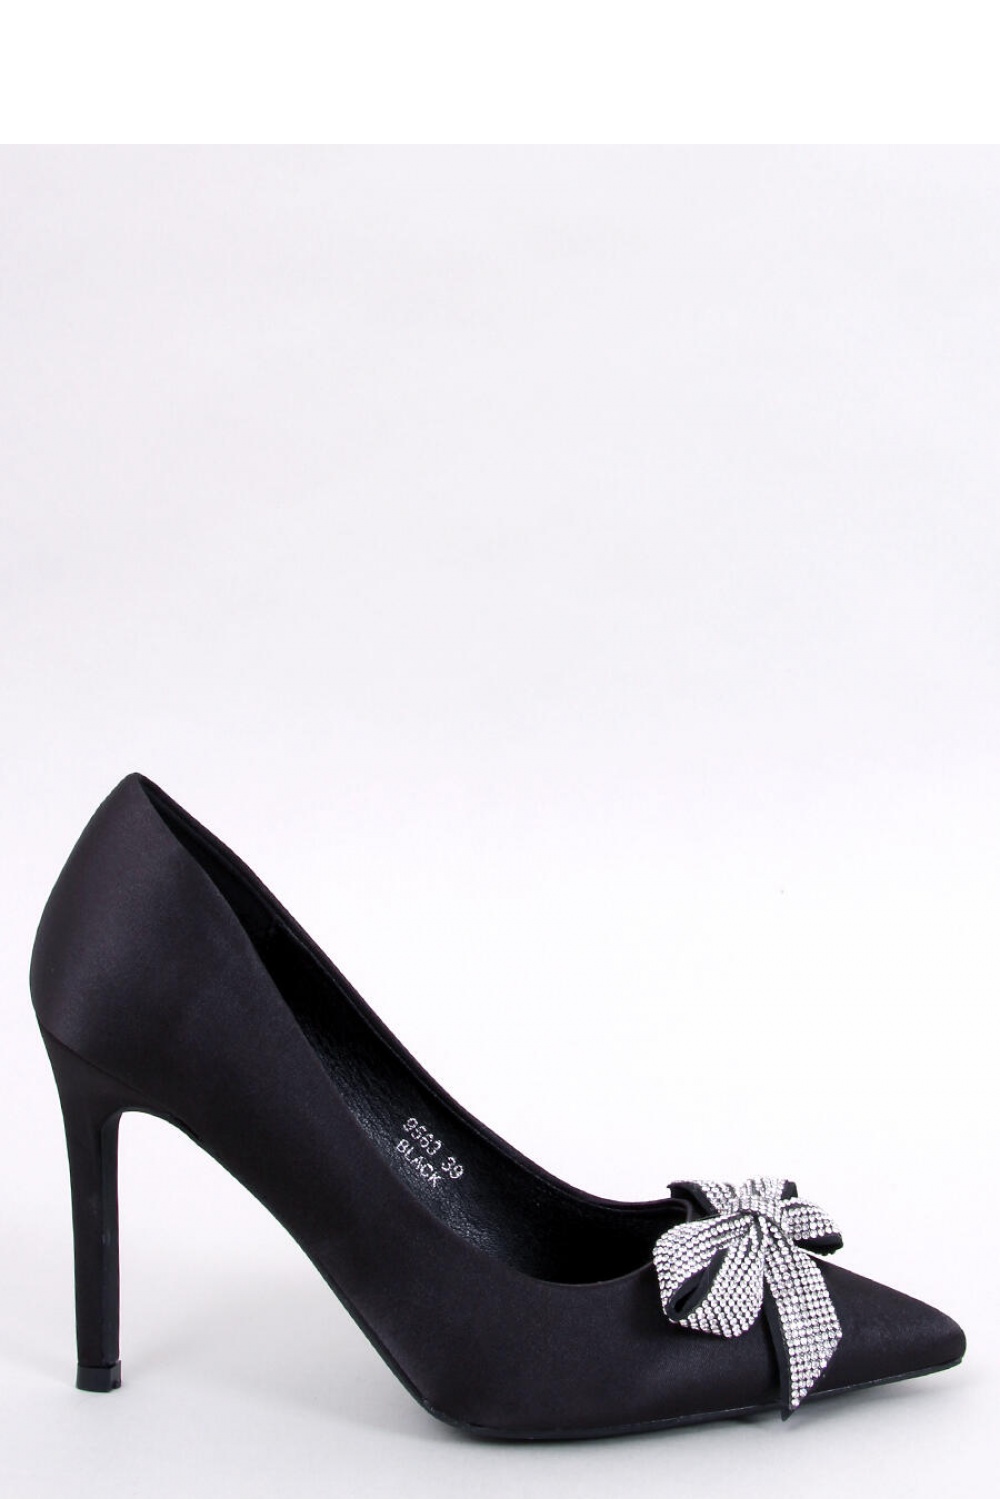 High heels model 181875 Inello